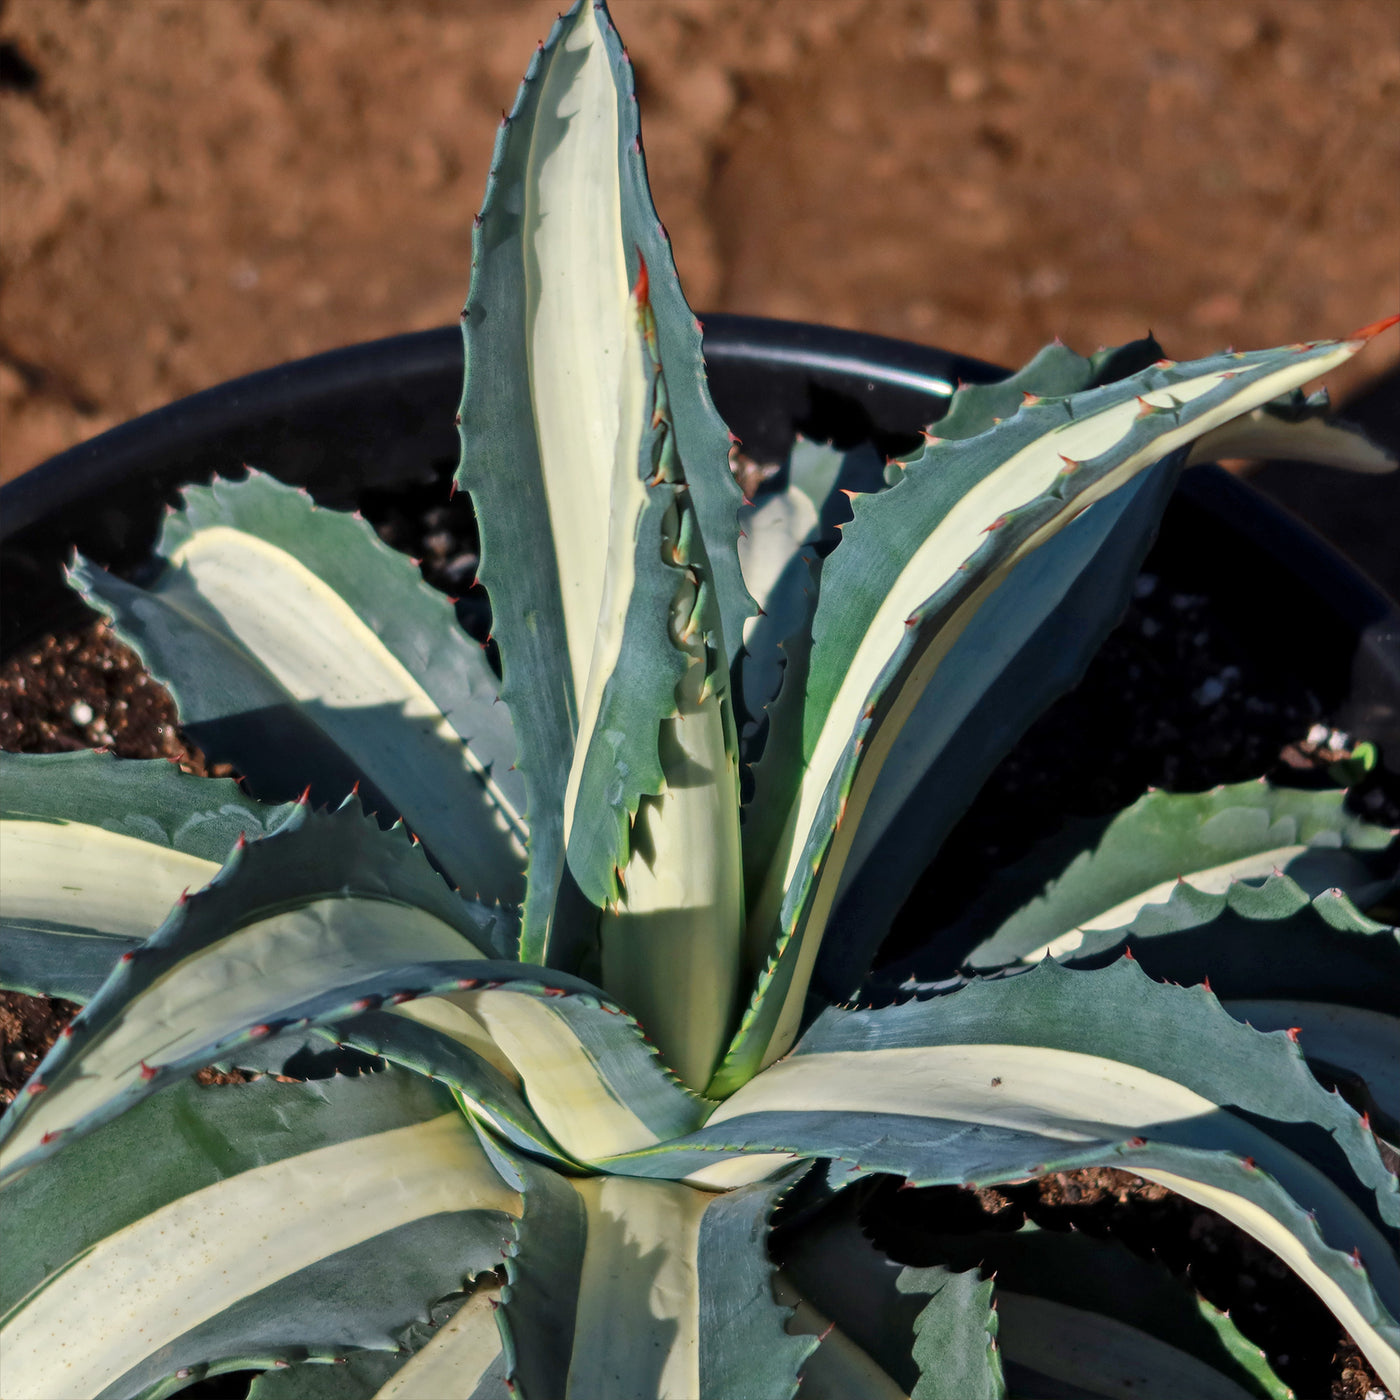 White Stripe Century Plant - Agave Americana 'Mediopicta Alba'